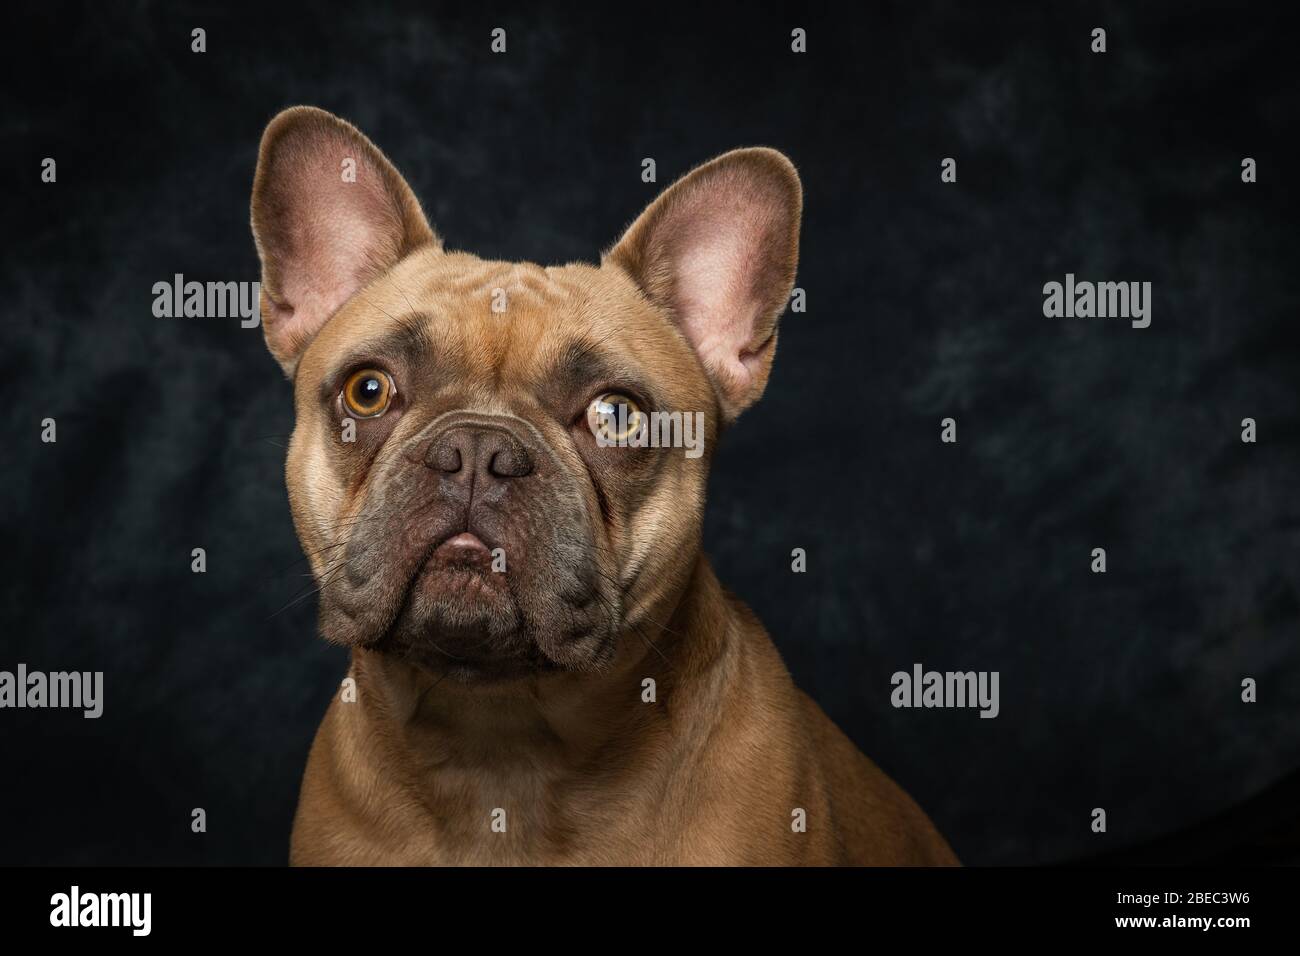 Photos de Bulldog en français sur fond, portrait de studio Banque D'Images